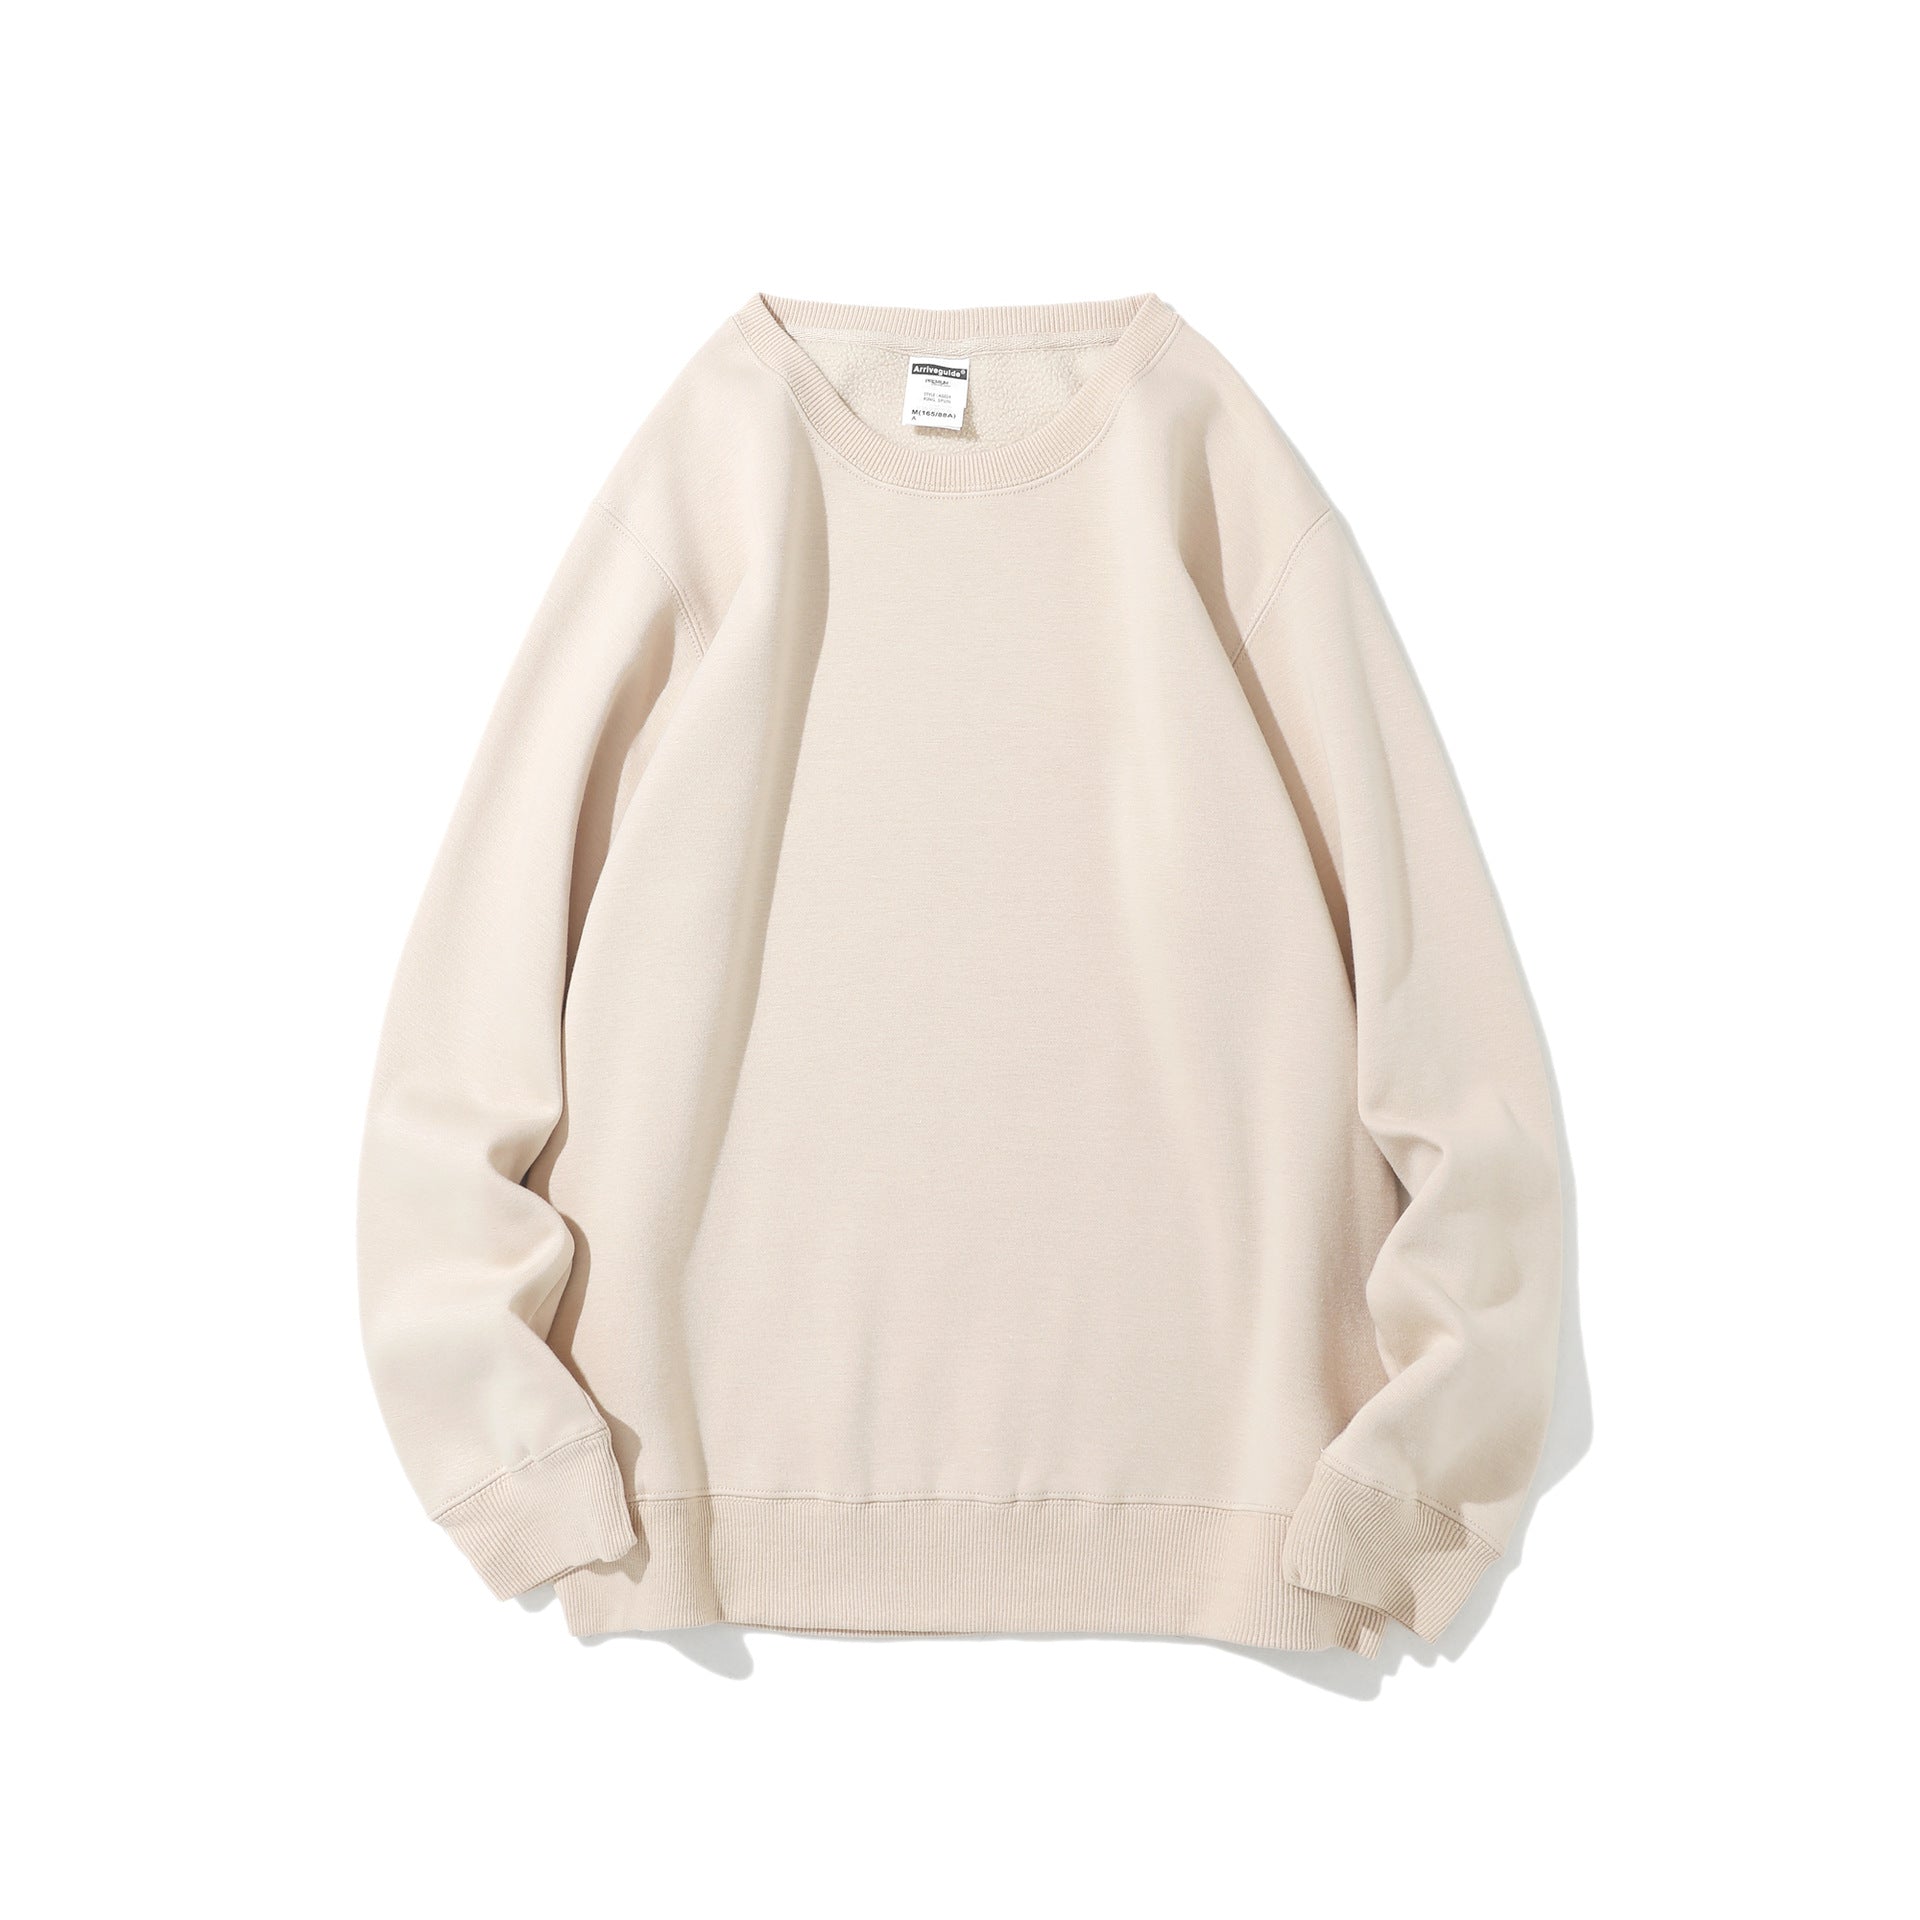 JENNIE 420g Polar Fleece Round Neck Pullover Sweater